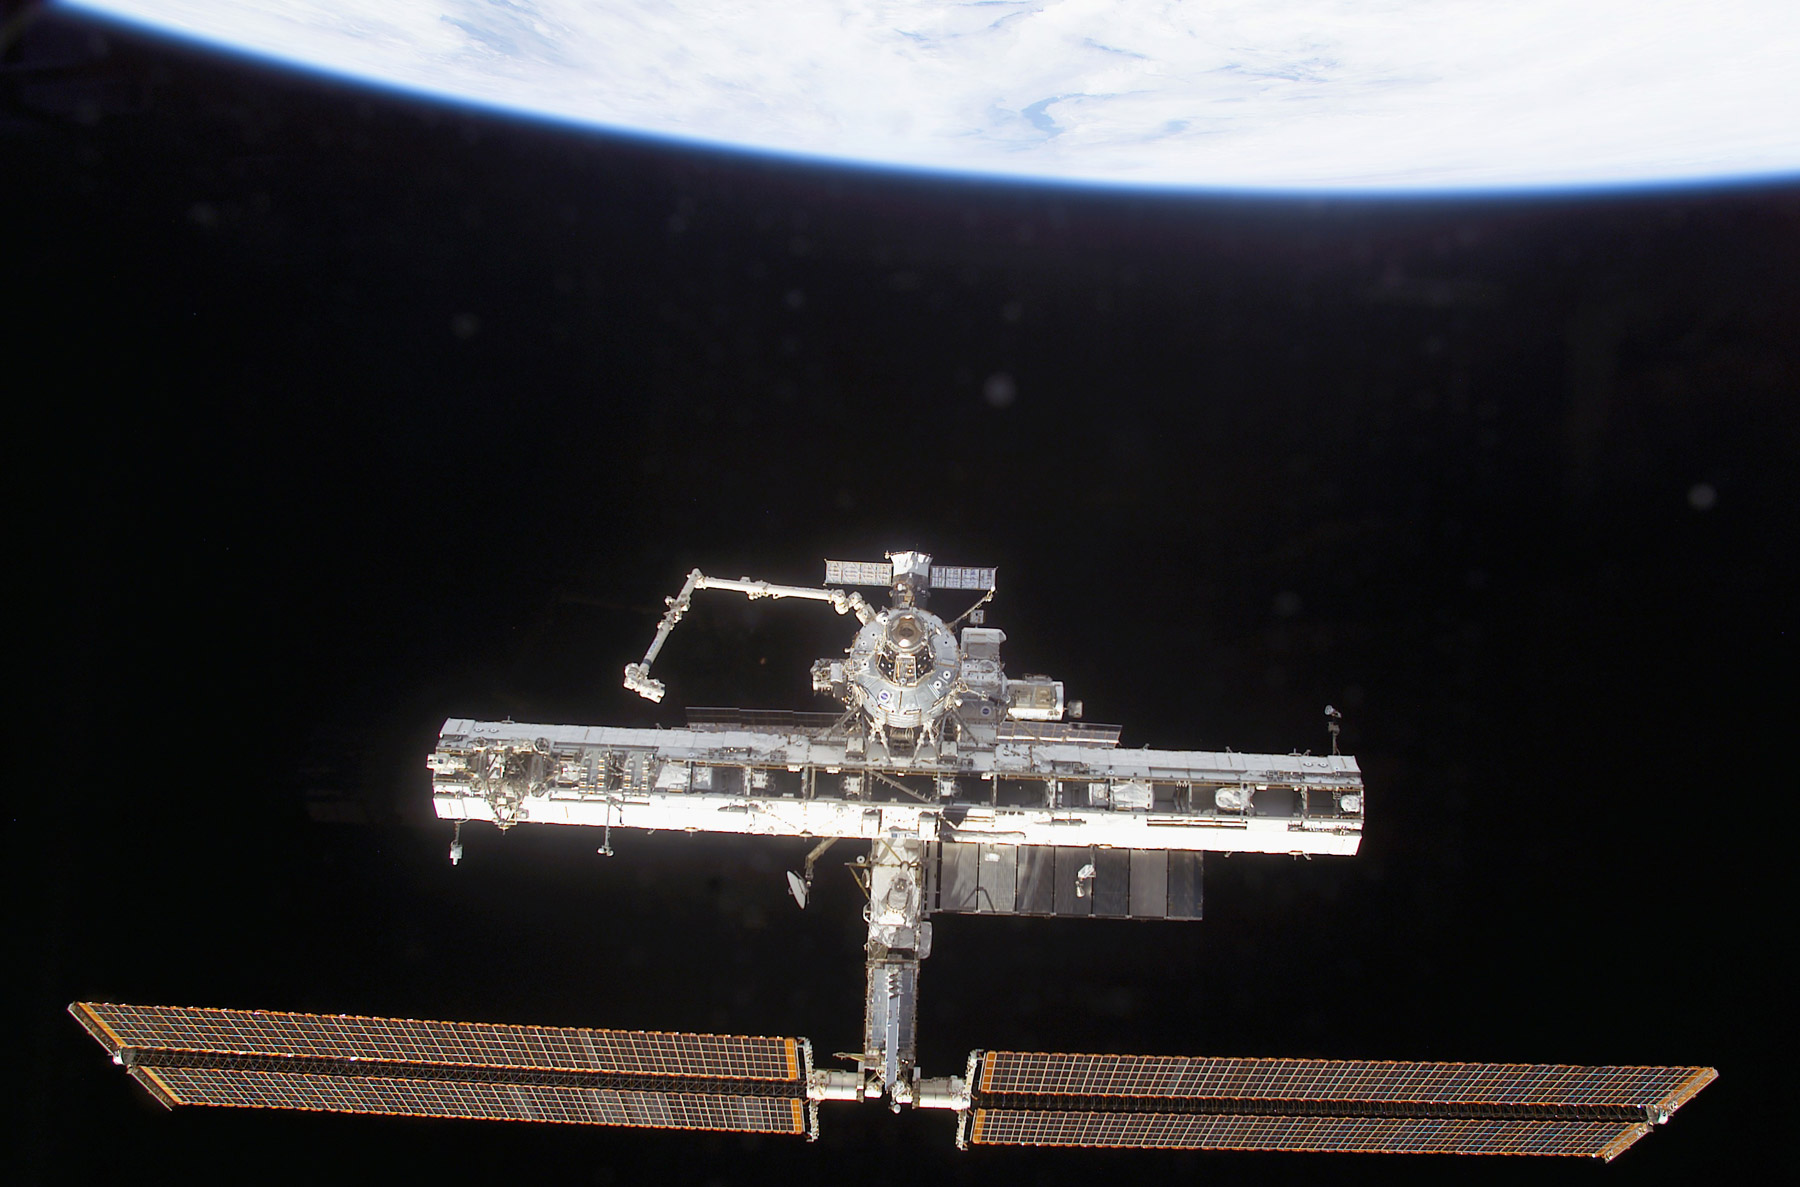 Octobre 2002, la grande poutre de l'ISS prend forme avec déjà 3 sections